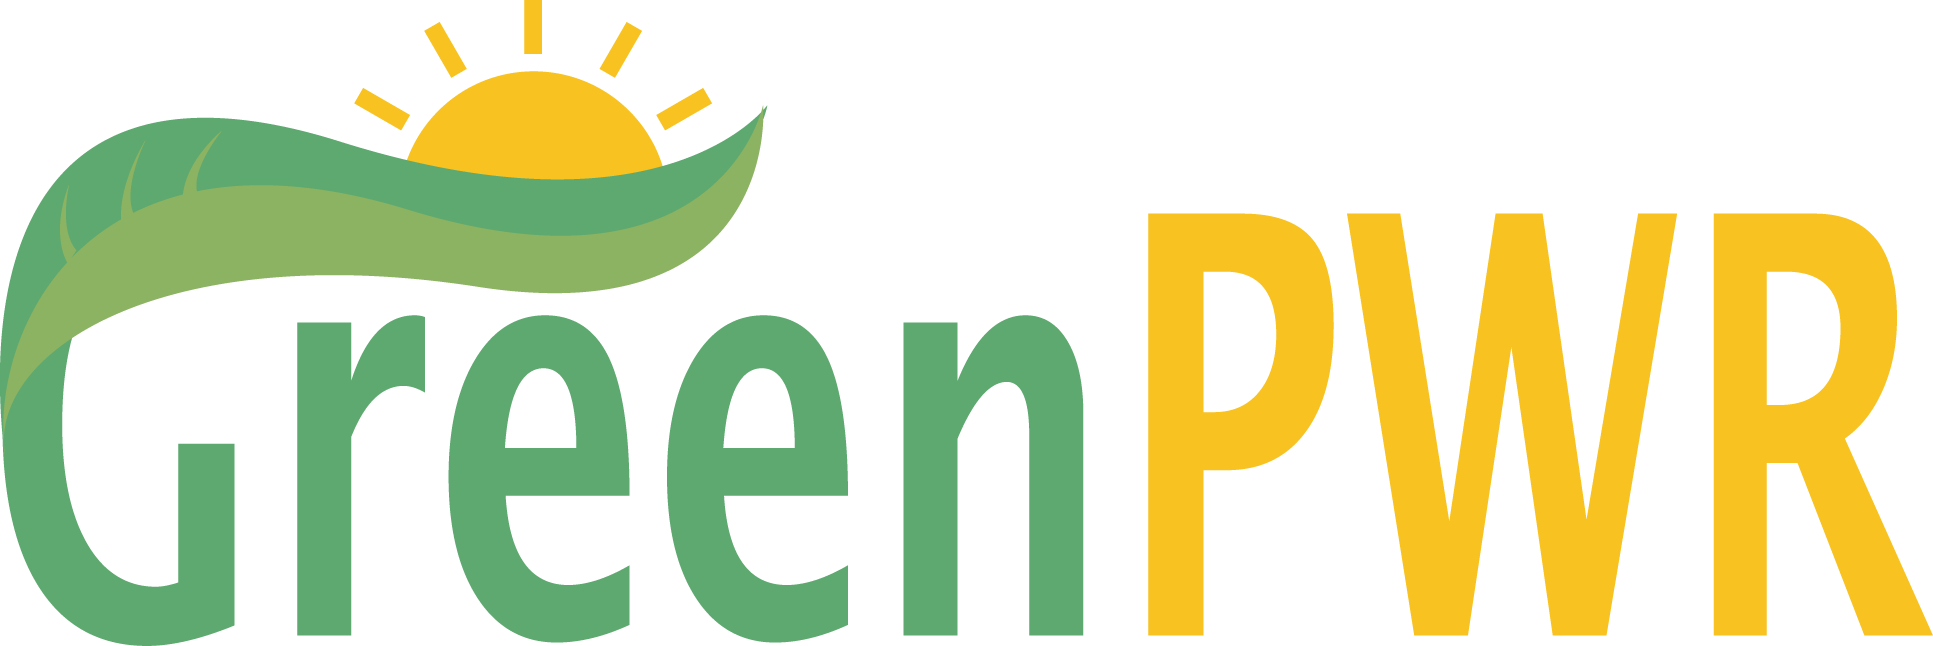 GreenPWR Logo